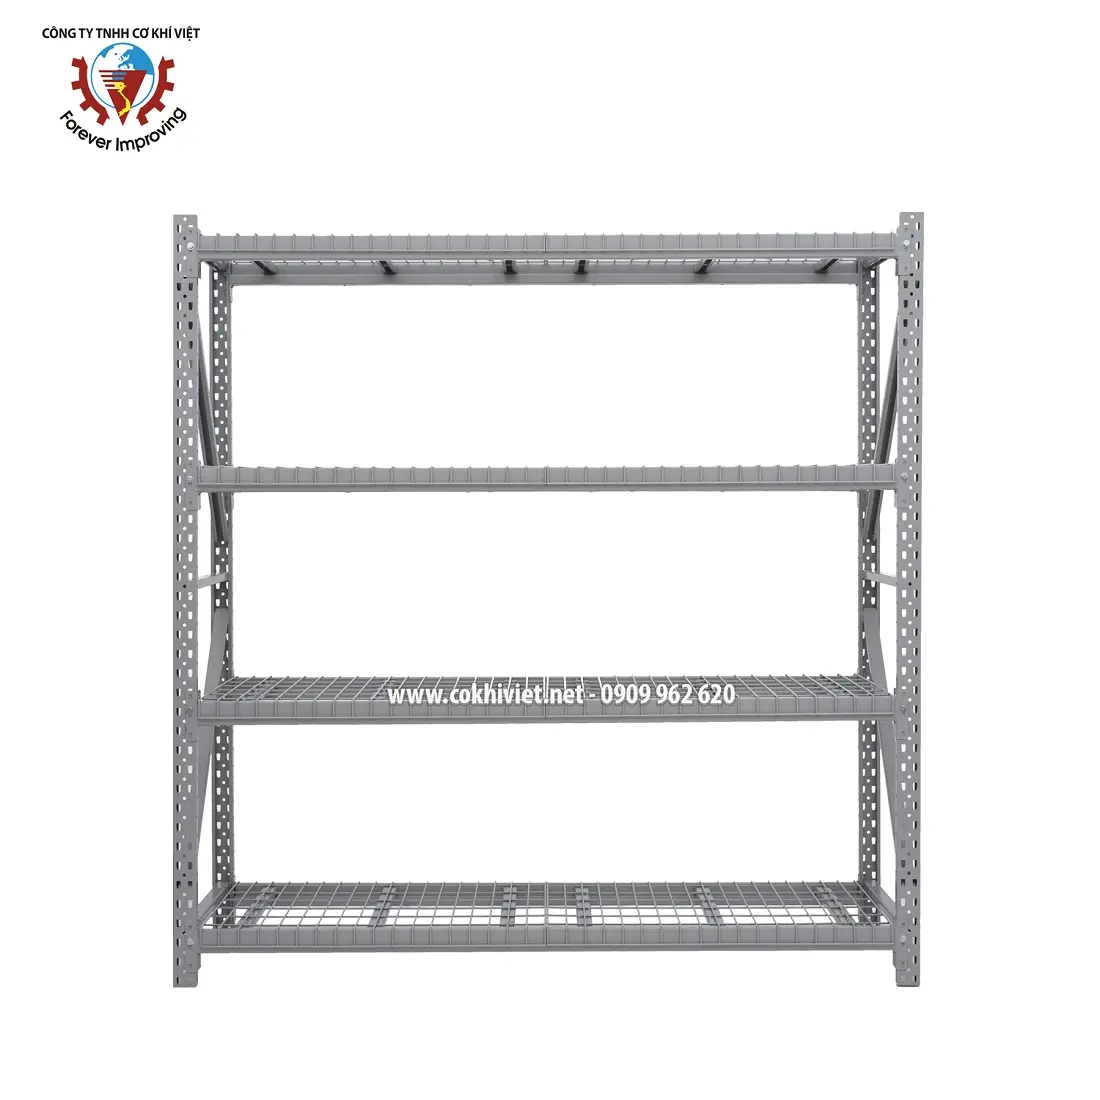 High Quality Furniture Export Manufacturer Storage Shelves For Medium Warehouses, Loads 300-1200KG / Tier